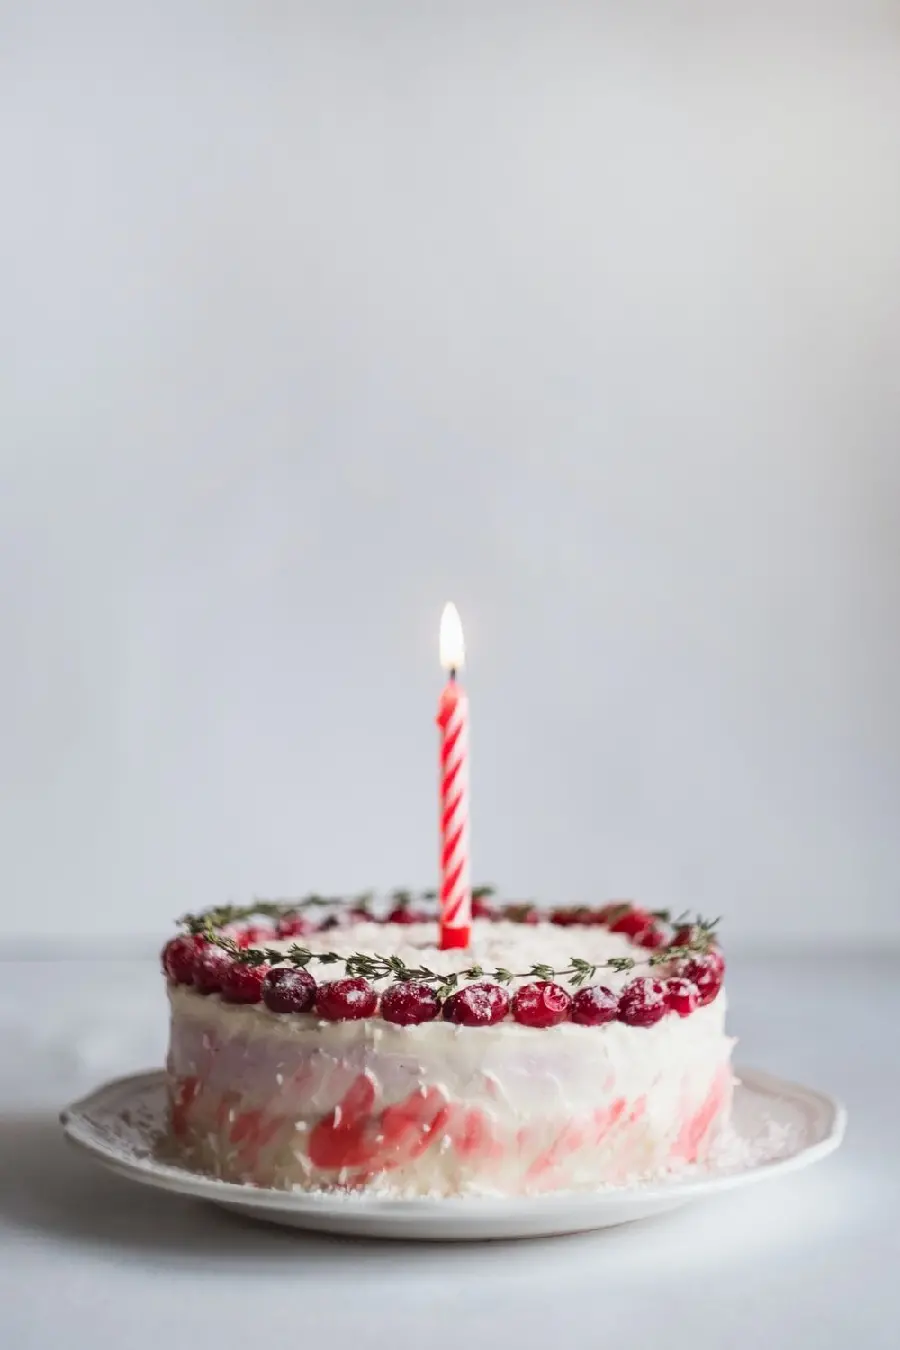 عکس کیک تولد با شمع برای چاپ پوستر در شیرینی فروشی ها